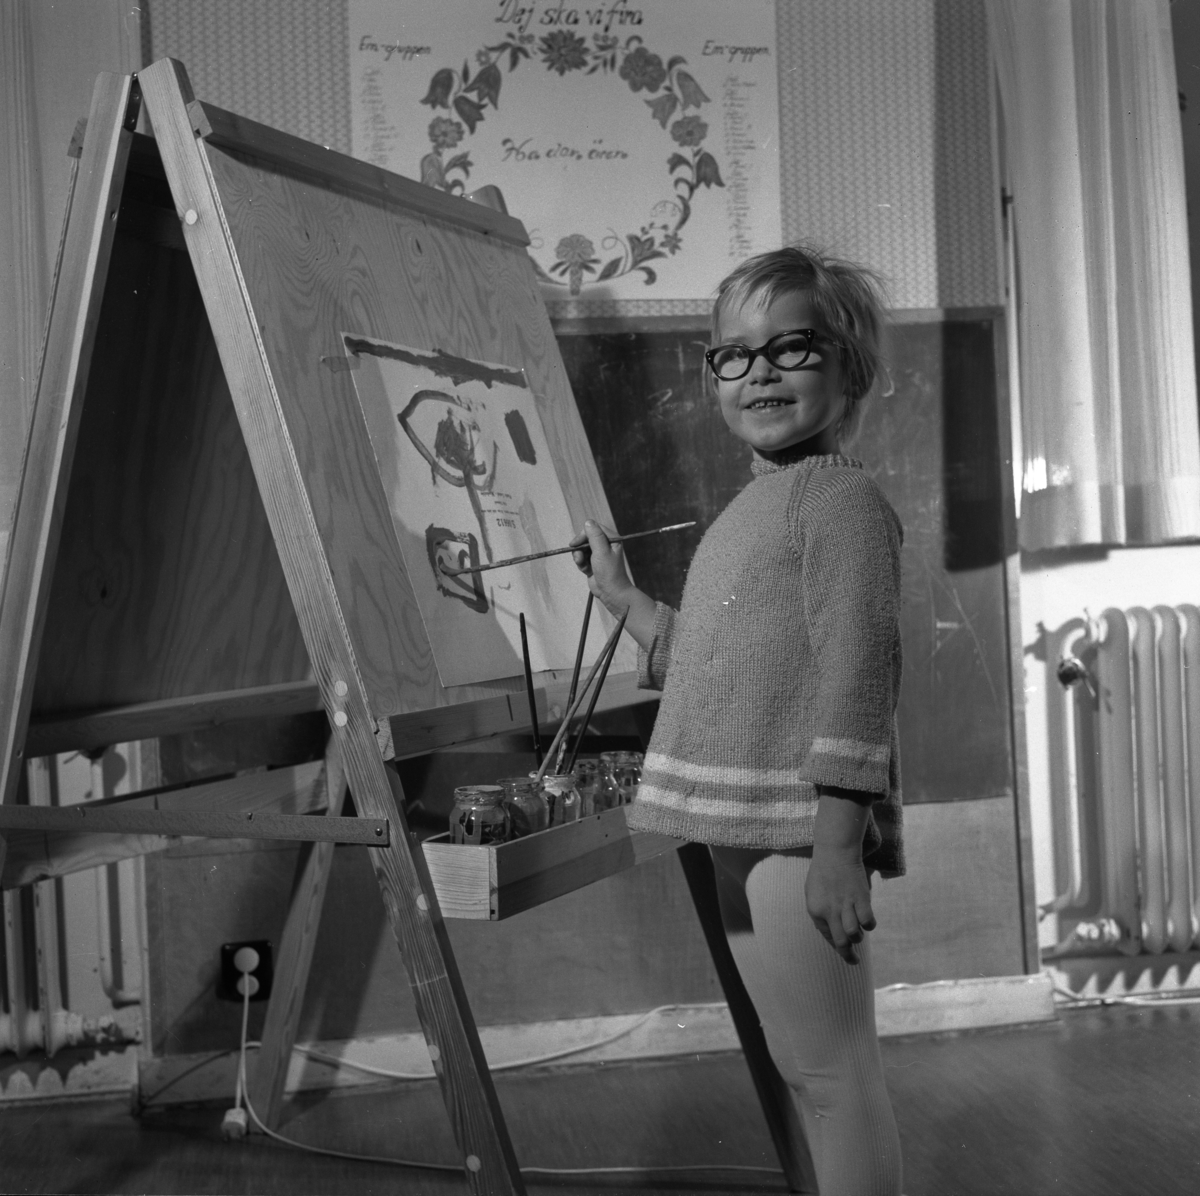 Rosendala barnträdgård i Huskvarna den 18 november 1970.